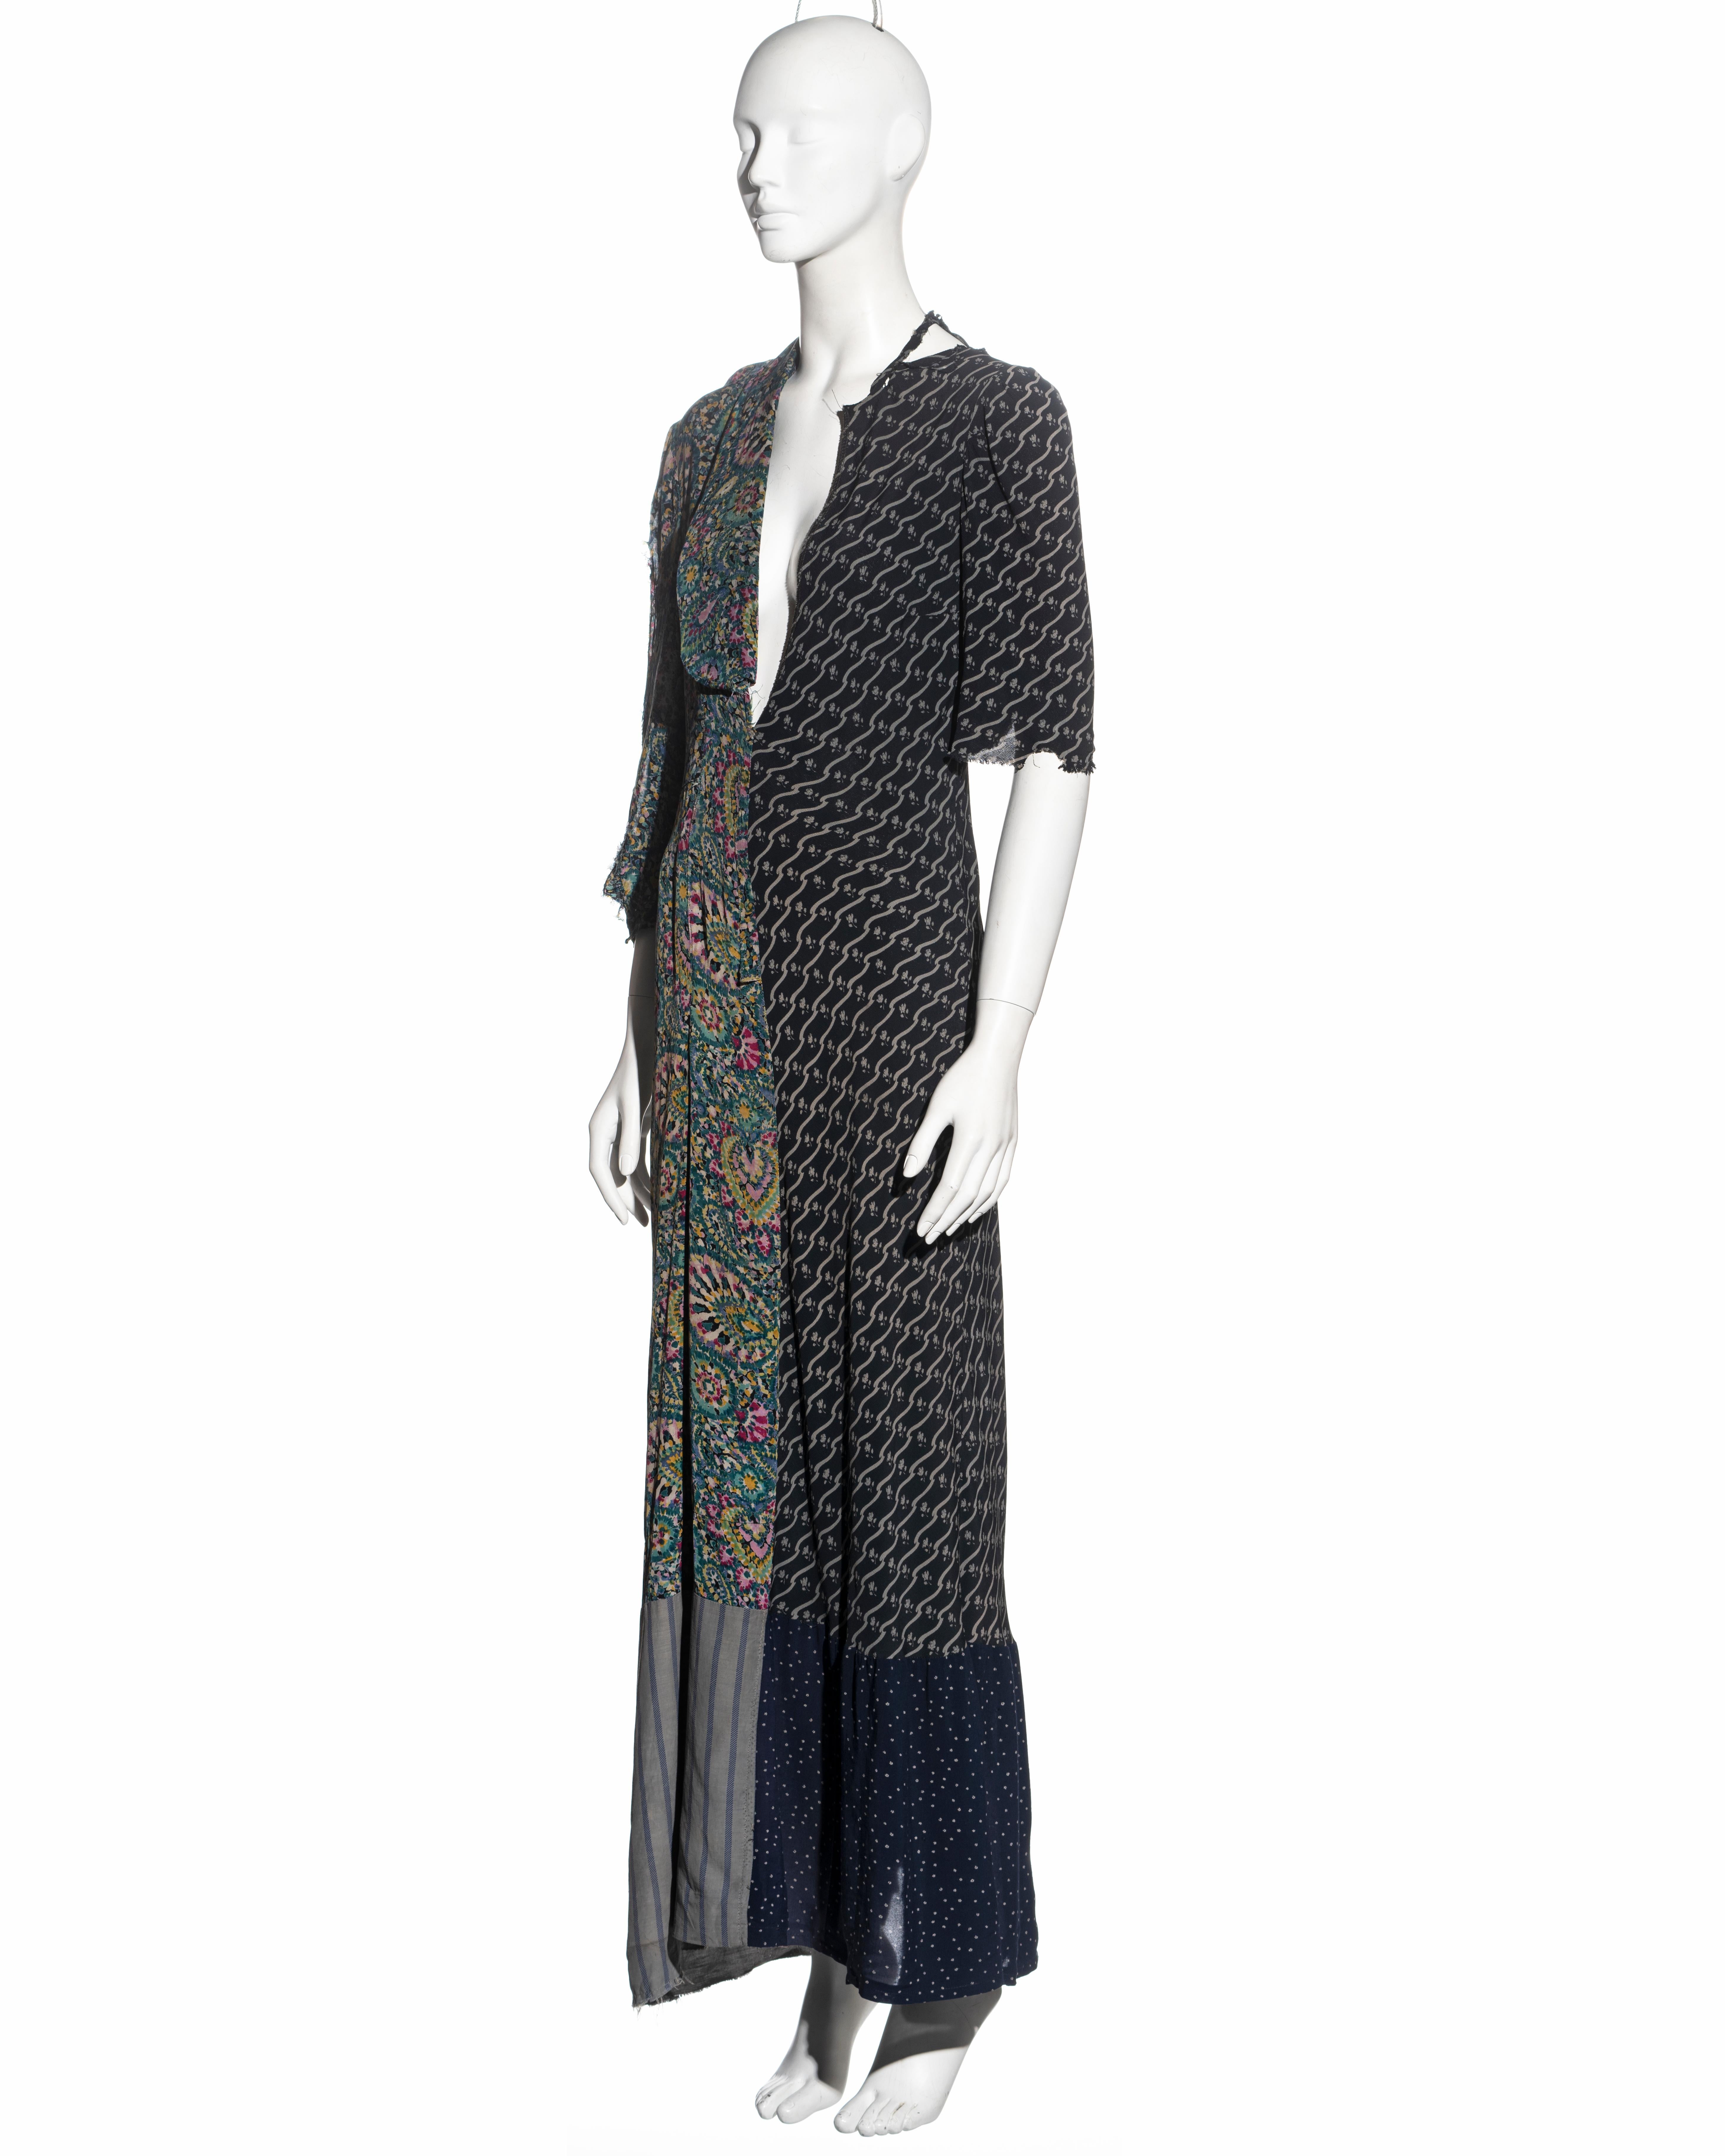 Women's Martin Margiela artisanal dress made from reclaimed vintage dresses, fw 1993 For Sale